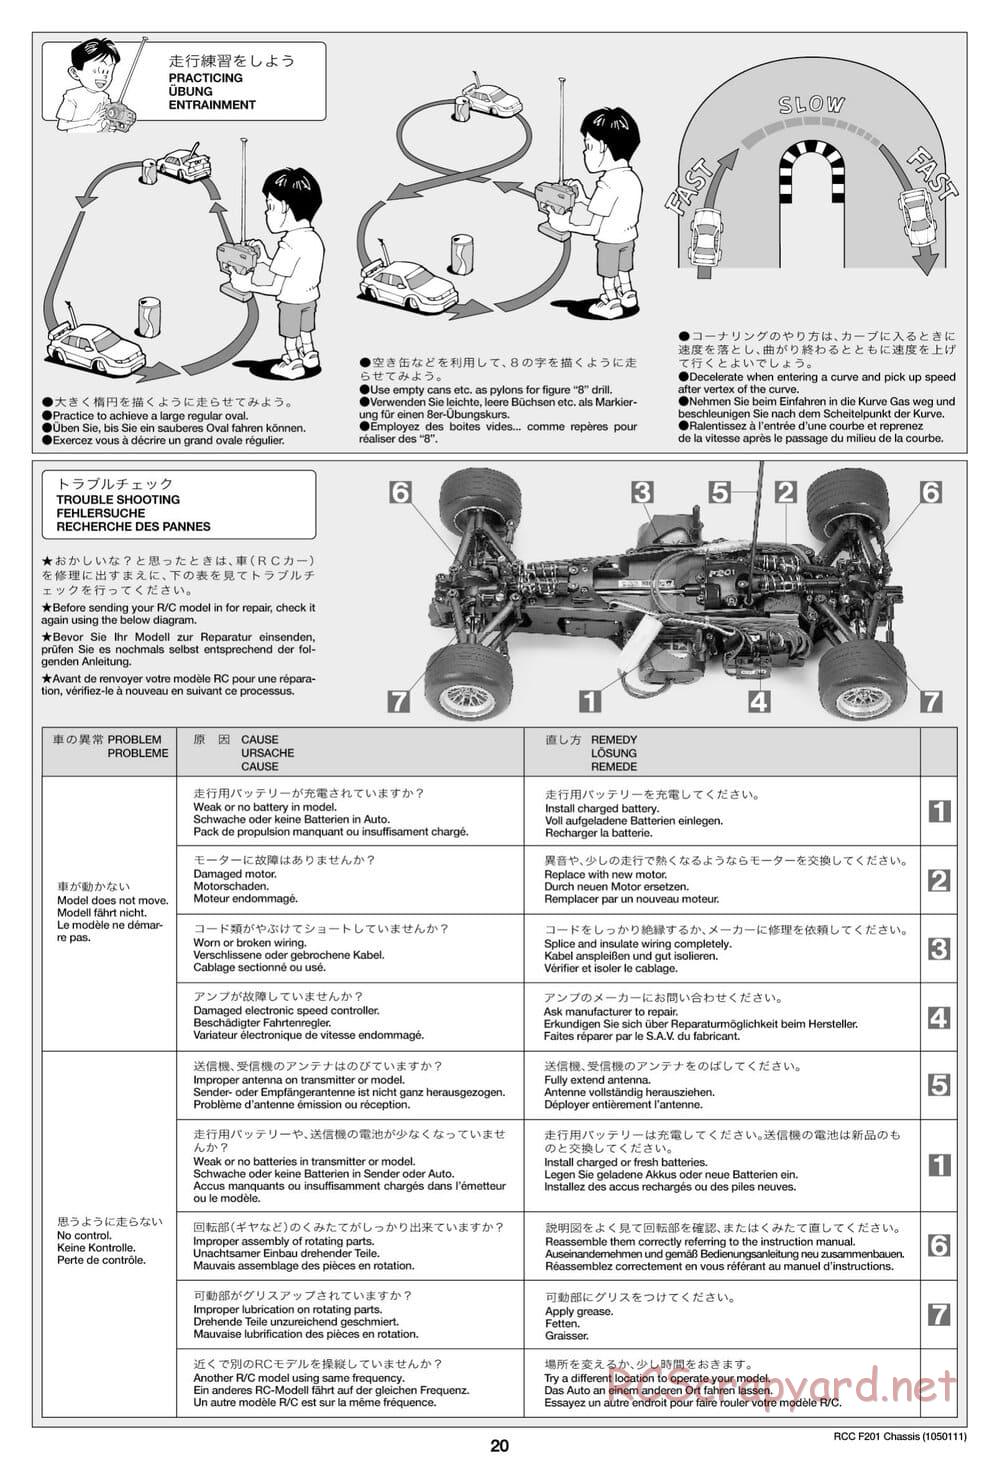 Tamiya - F201 Chassis - Manual - Page 20